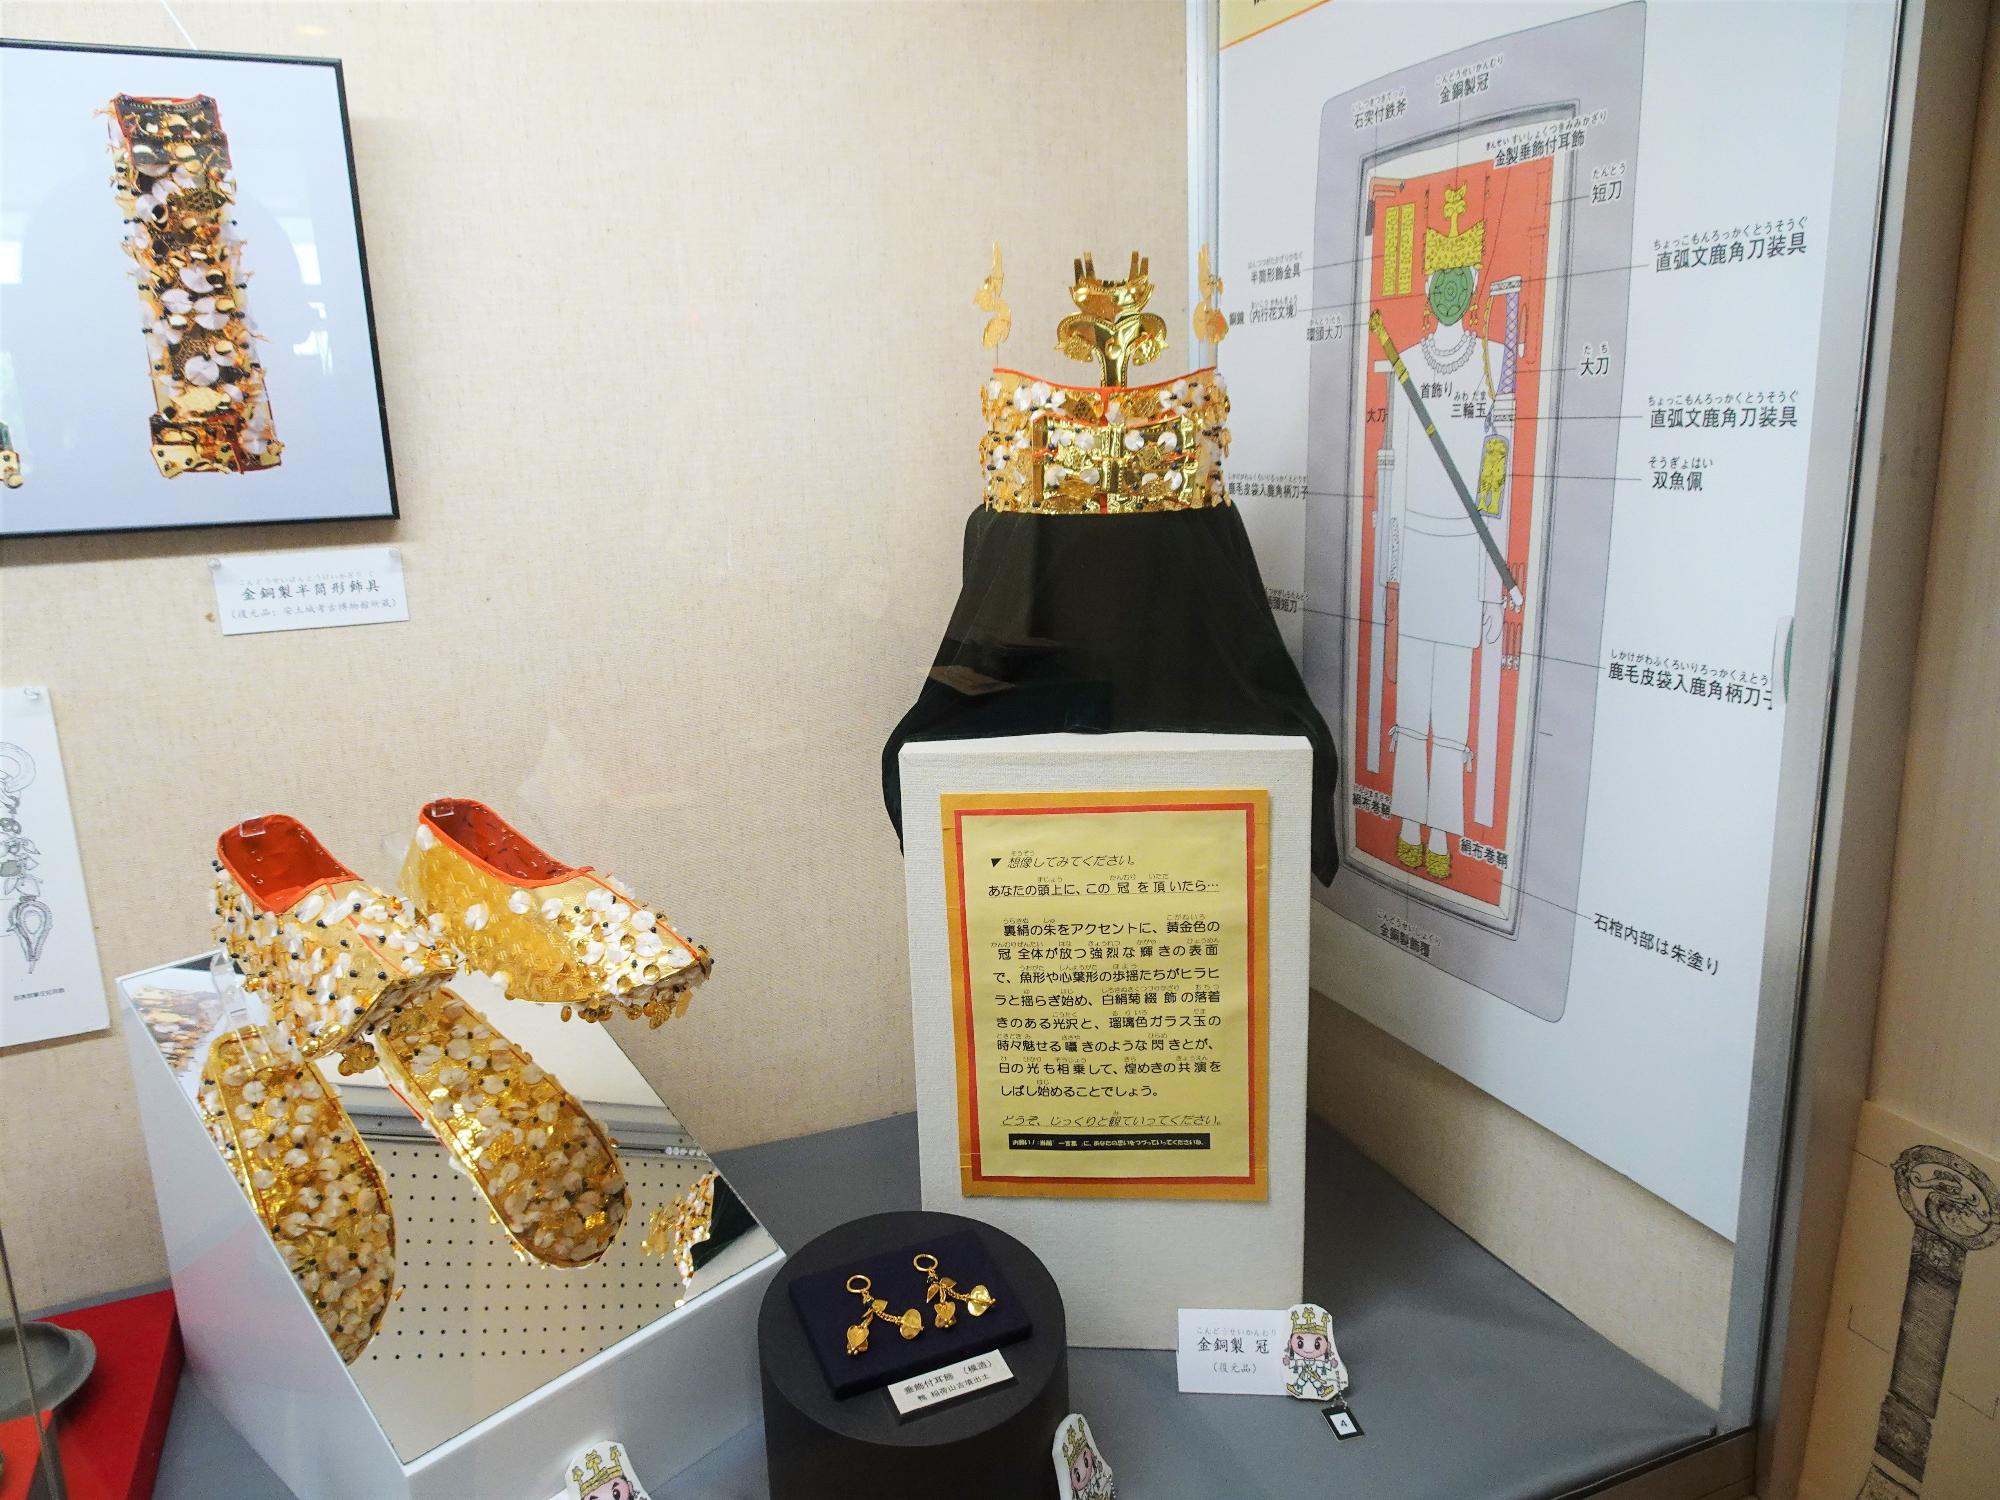 展示されている靴や王冠、アクセサリーの写真